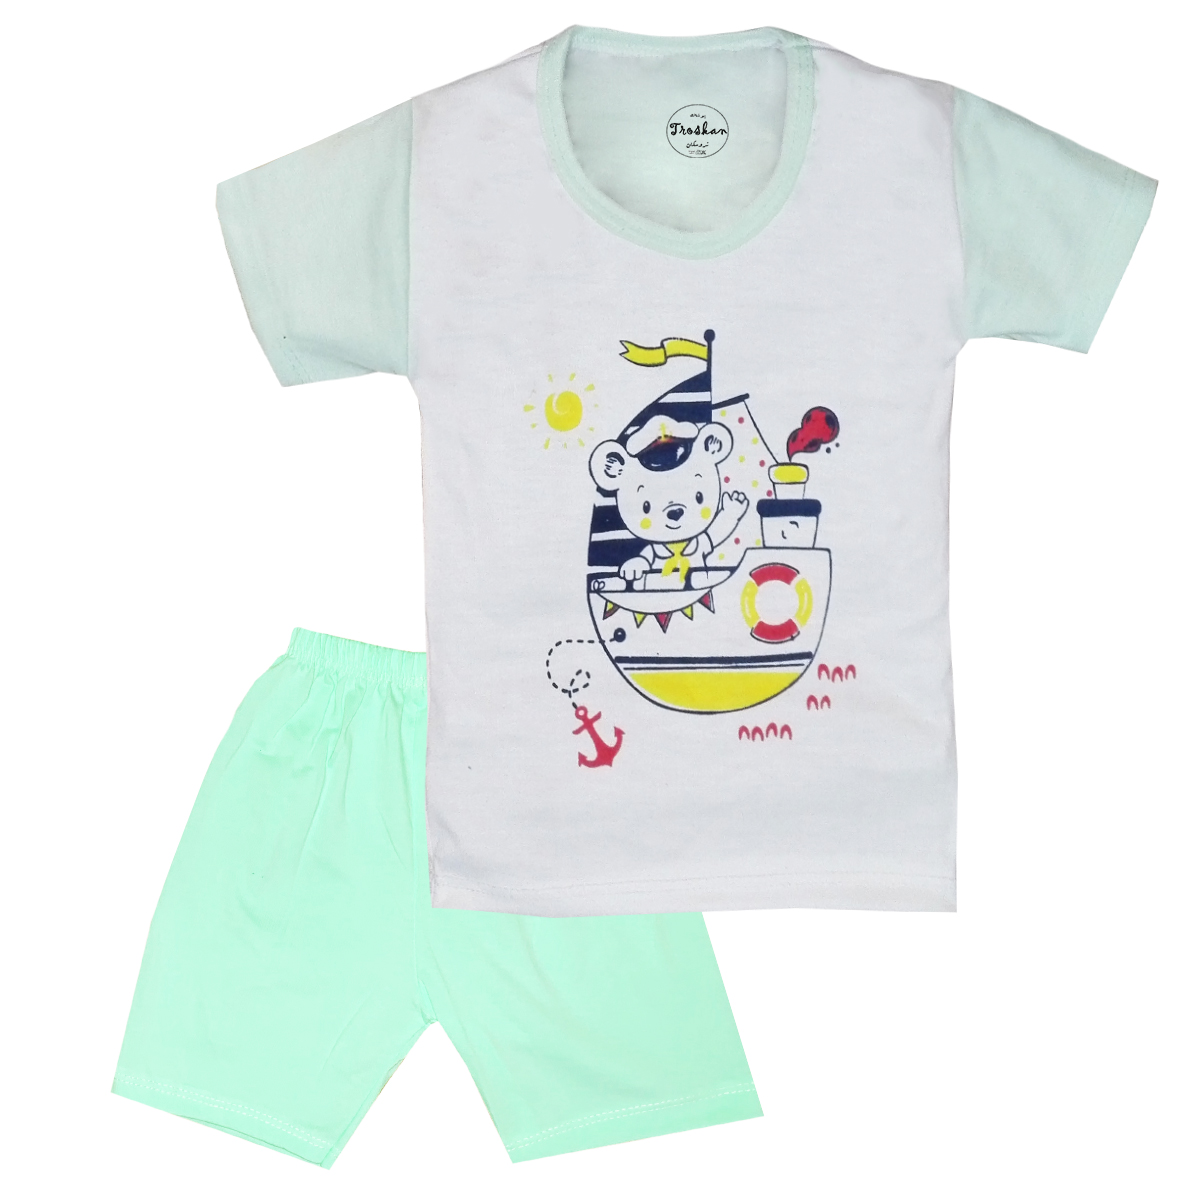 ست تی شرت و شلوارک نوزادی تروسکان مدل Bear101